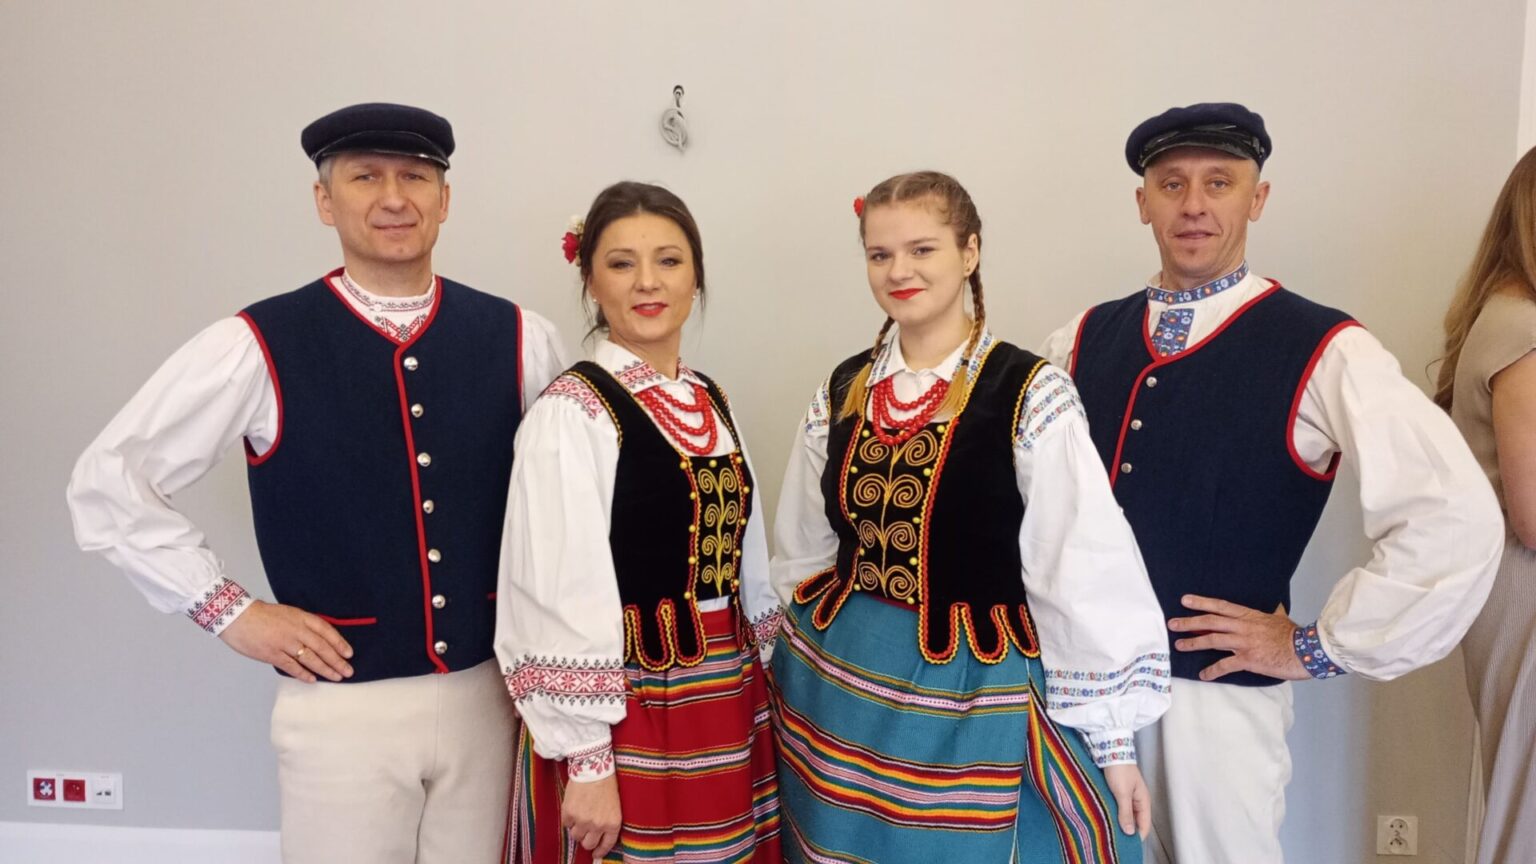 Podlaskie voivodeship spent 120 thousand zlotys on folk costumes